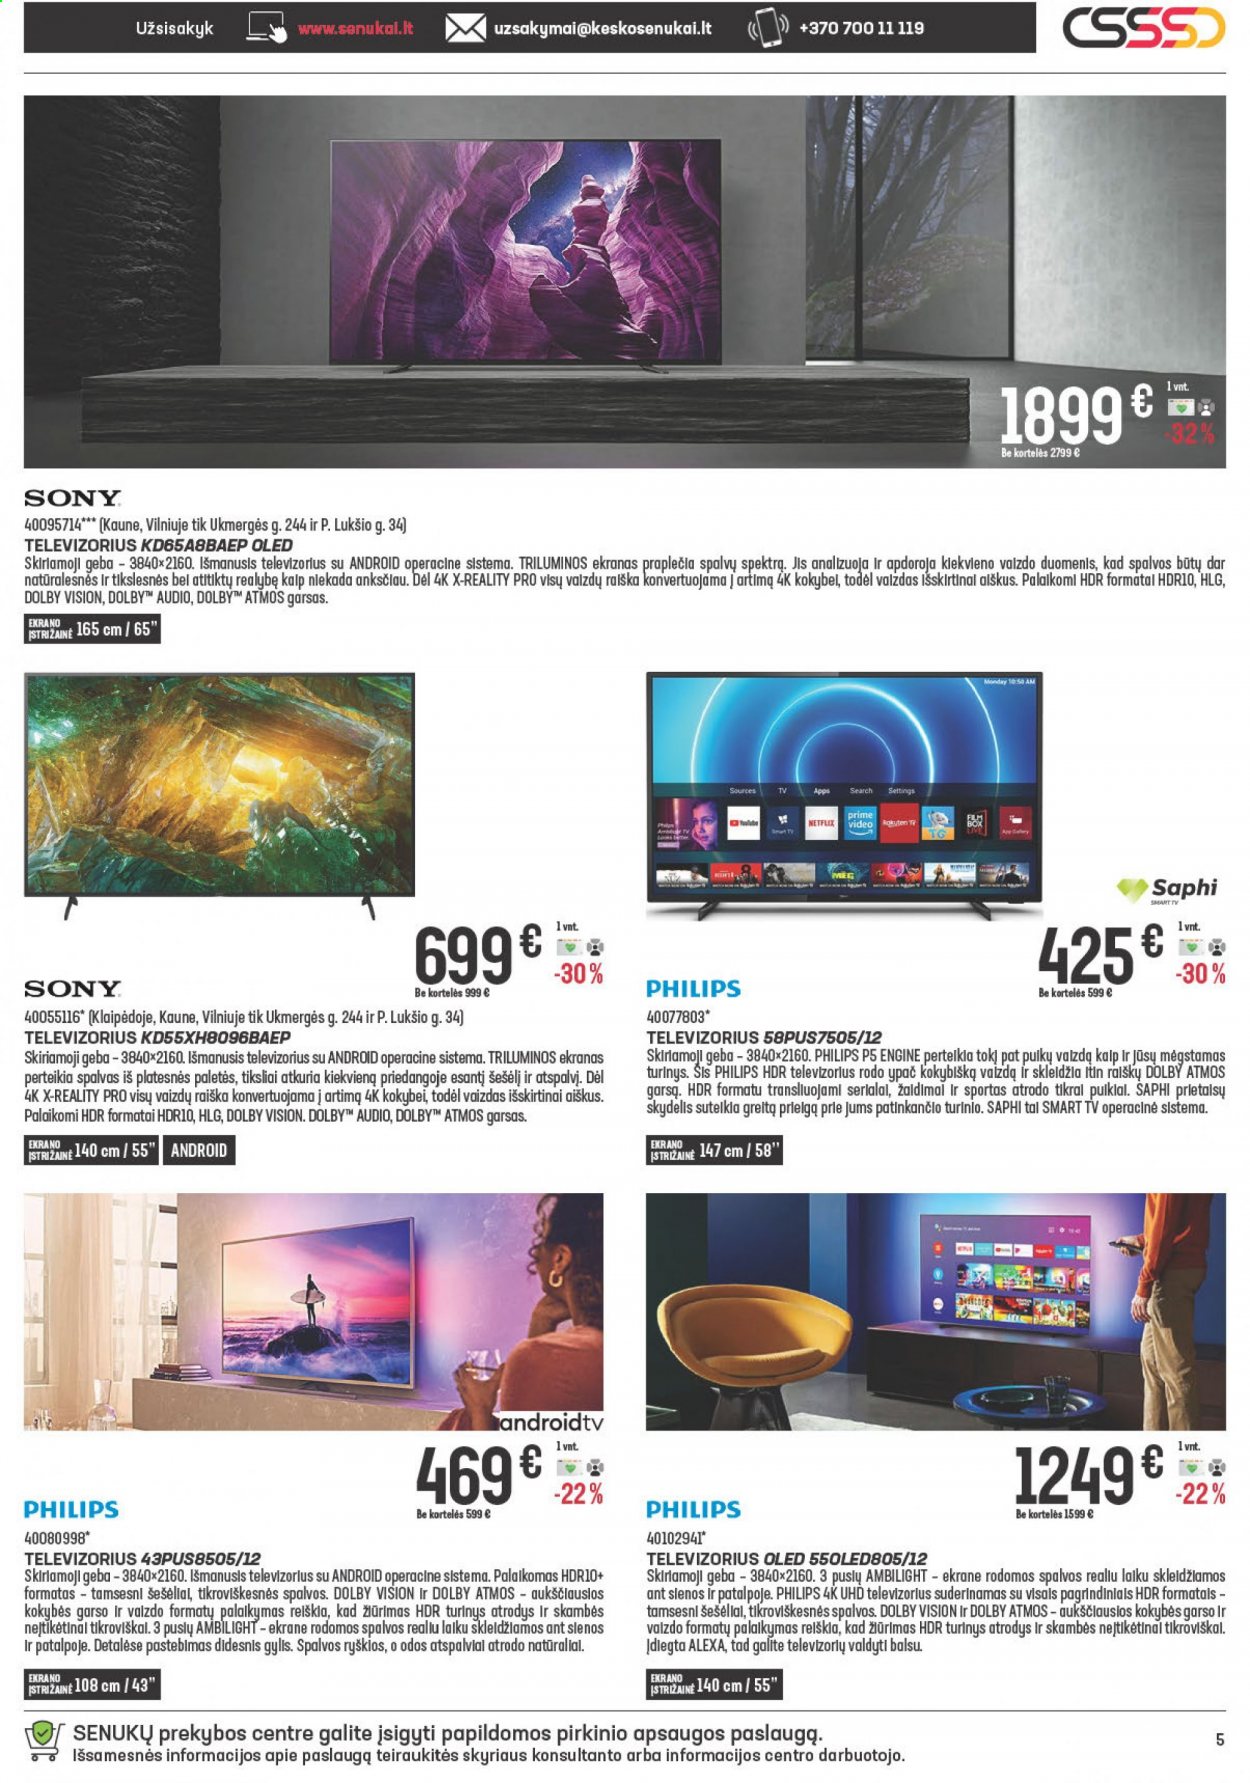 thumbnail - „Senukai“ leidinys - 2021 02 24 - 2021 03 30 - Išpardavimų produktai - Philips, Sony, OLED, televizorius. 5 puslapis.